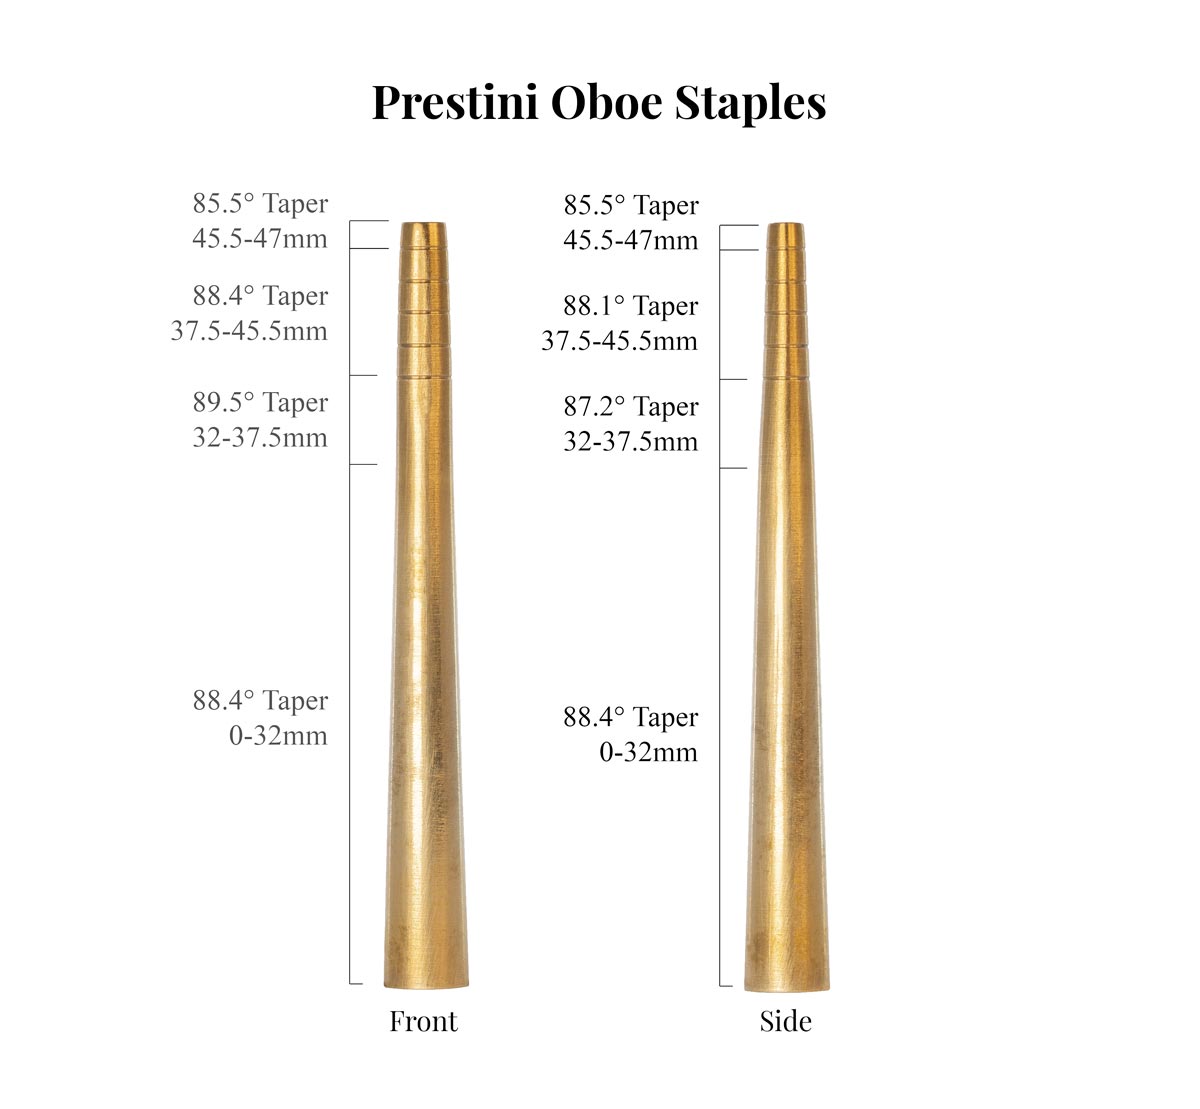 Prestini Oboe Staples Taper Comparison